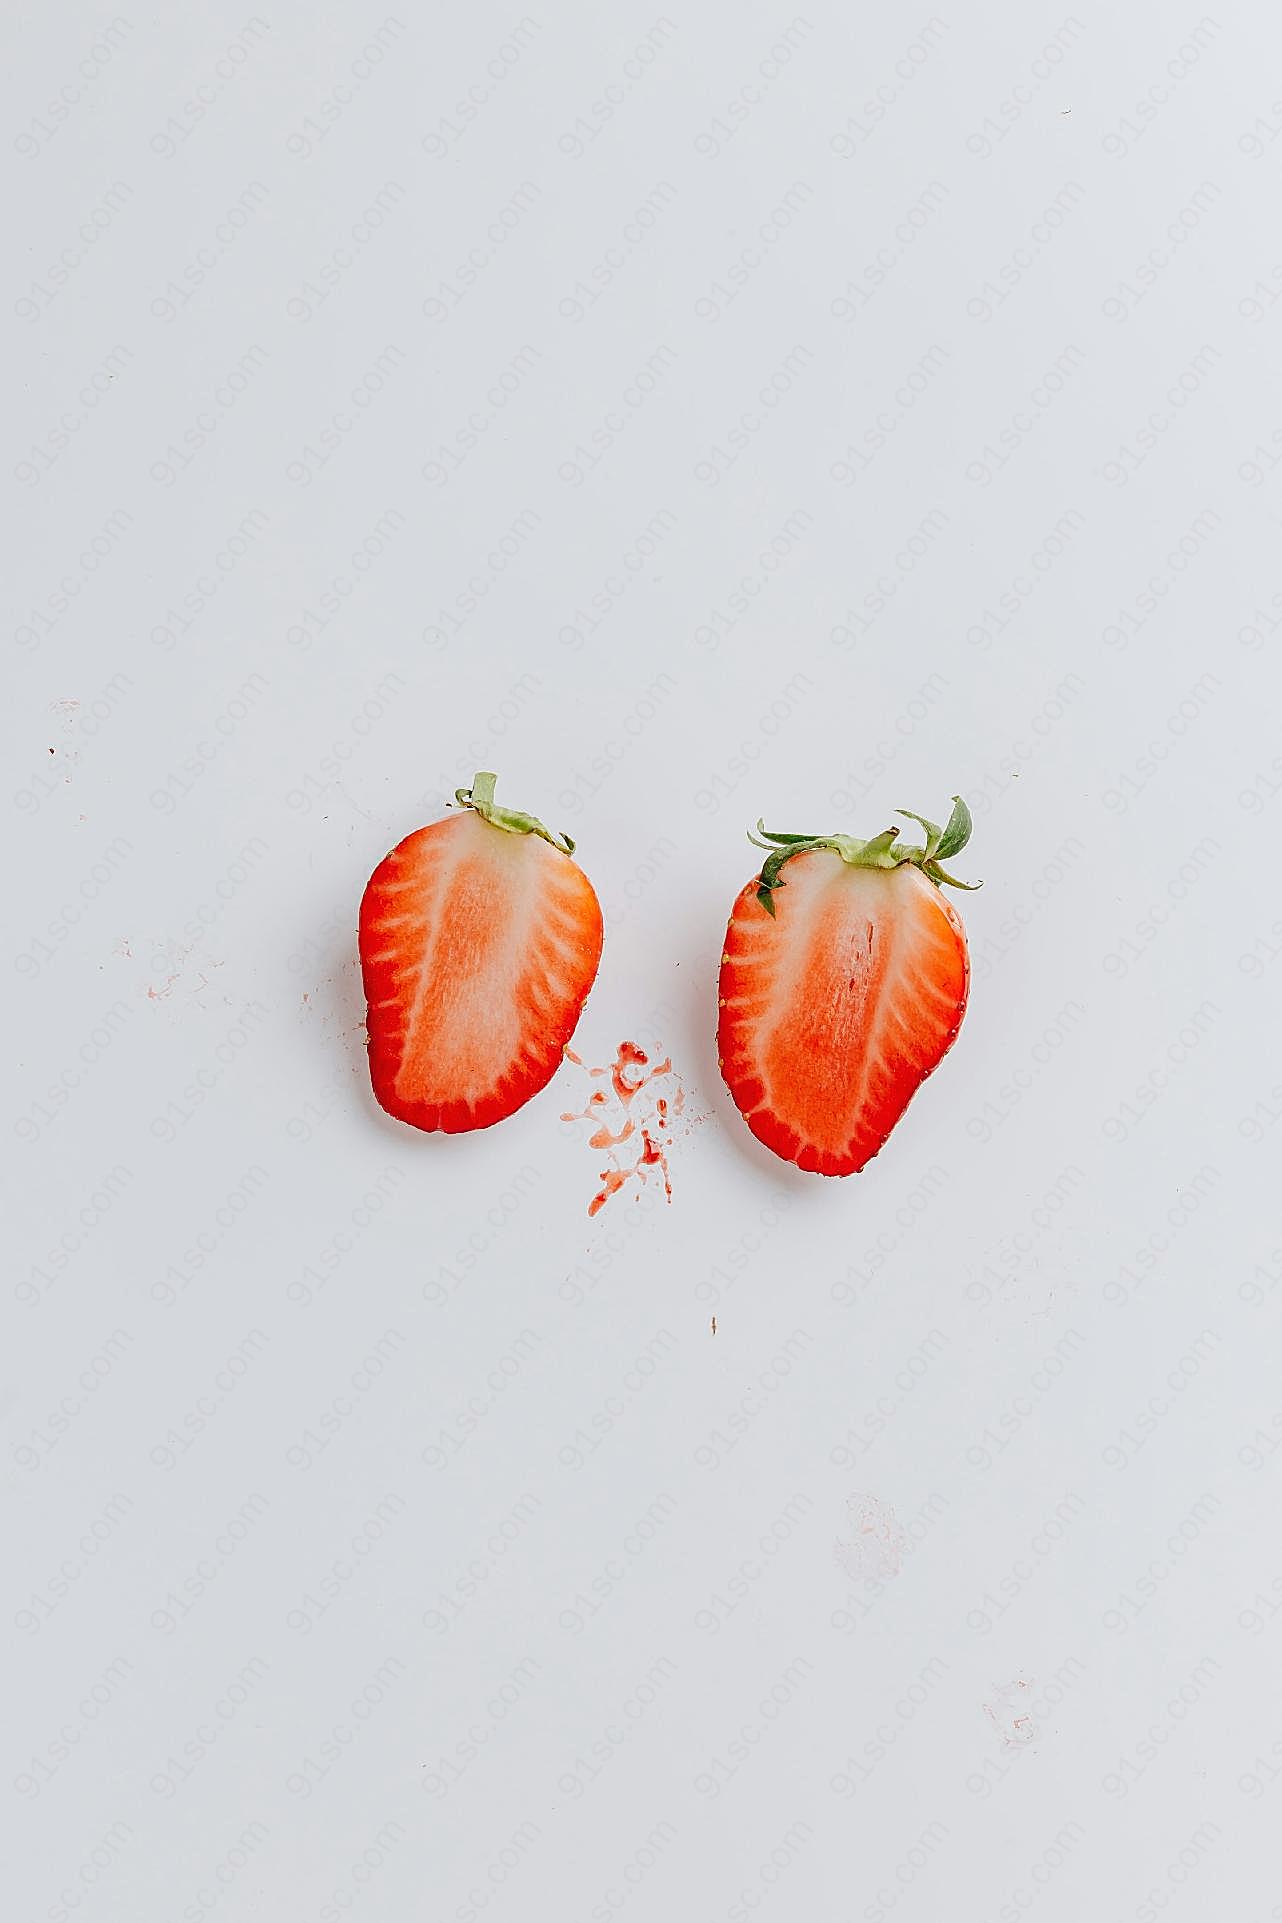 草莓切片图片高清